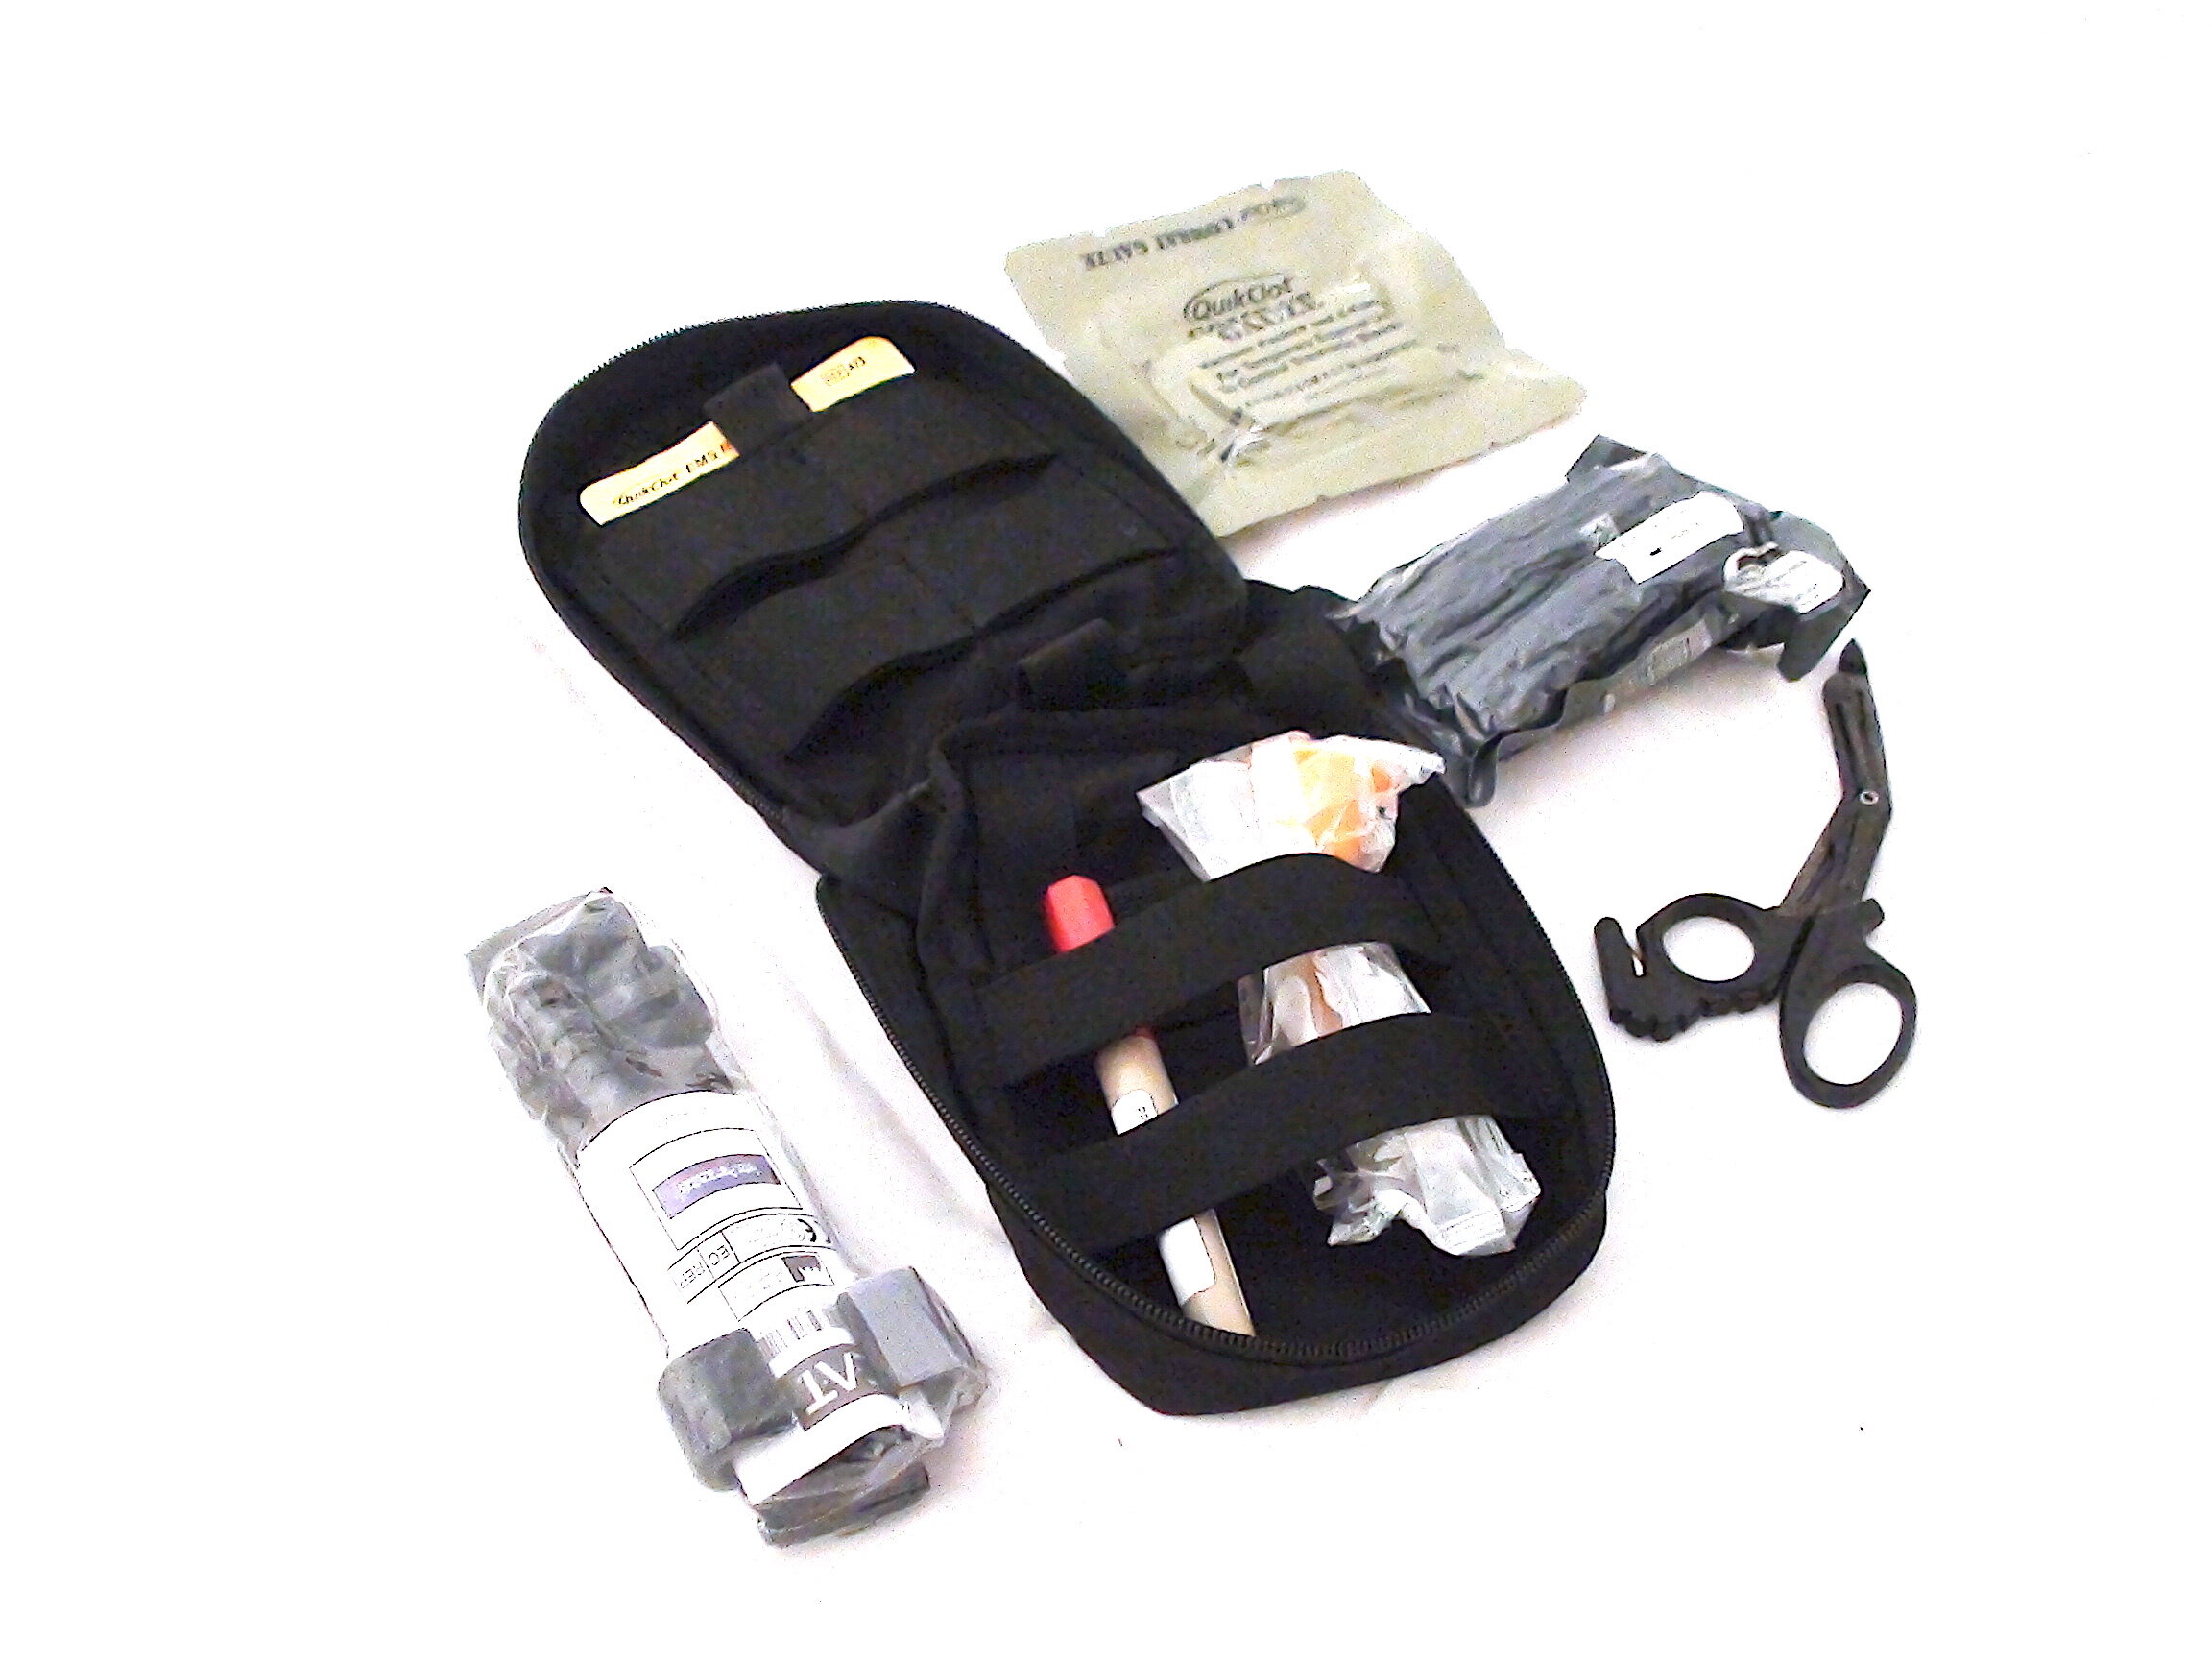 Kemp Professional Trauma bag/EMS/EMT/PARAMEDIC BAG/First responder bag -  YouTube